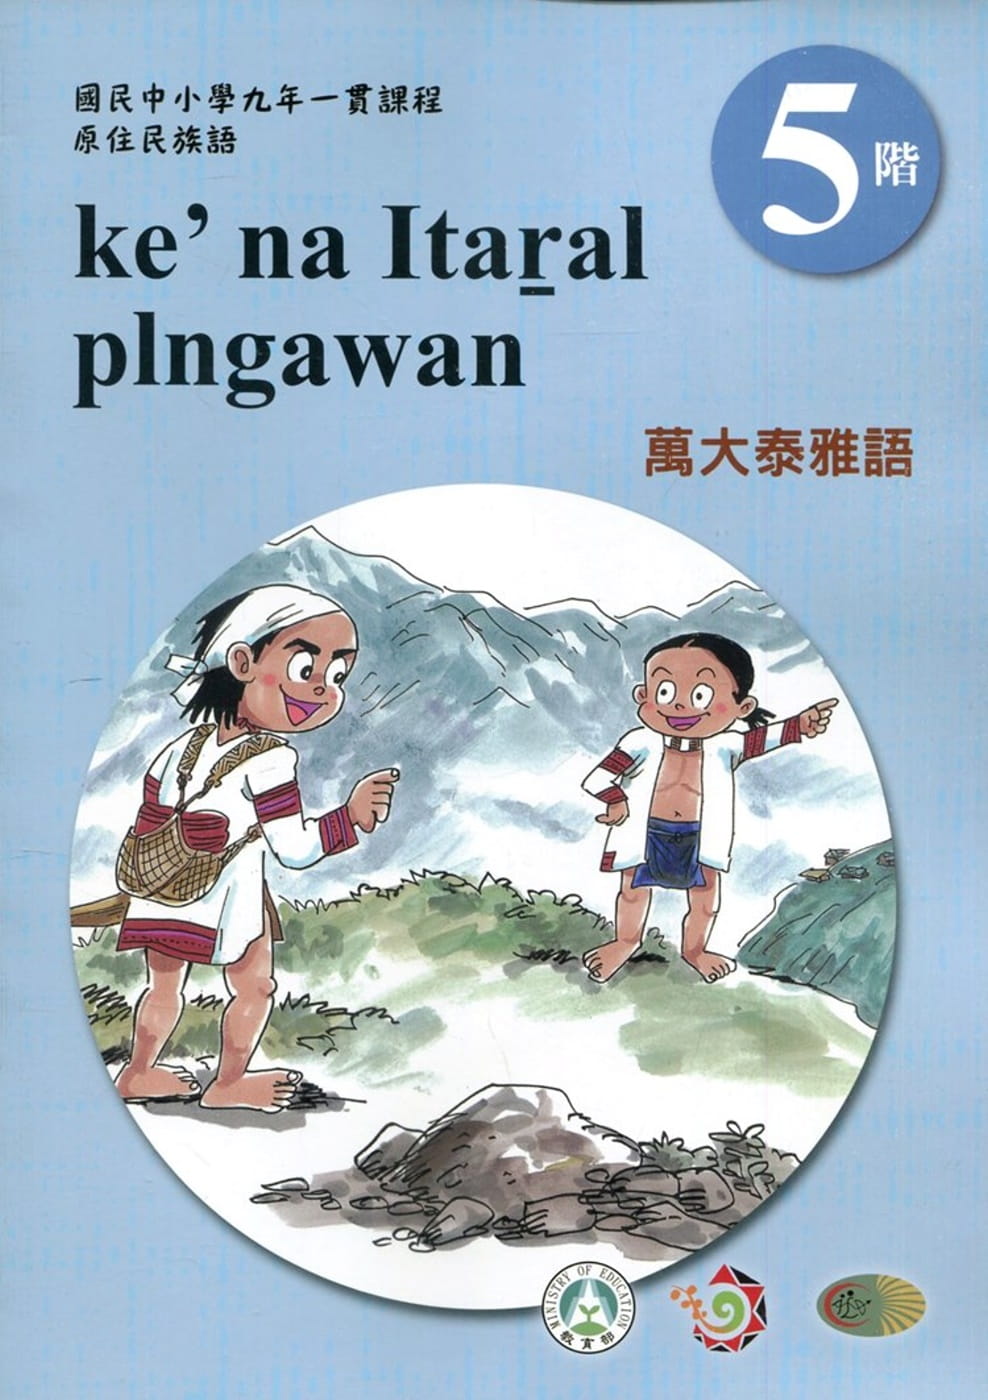 萬大泰雅語學習手冊第5階(附光碟)3版2刷